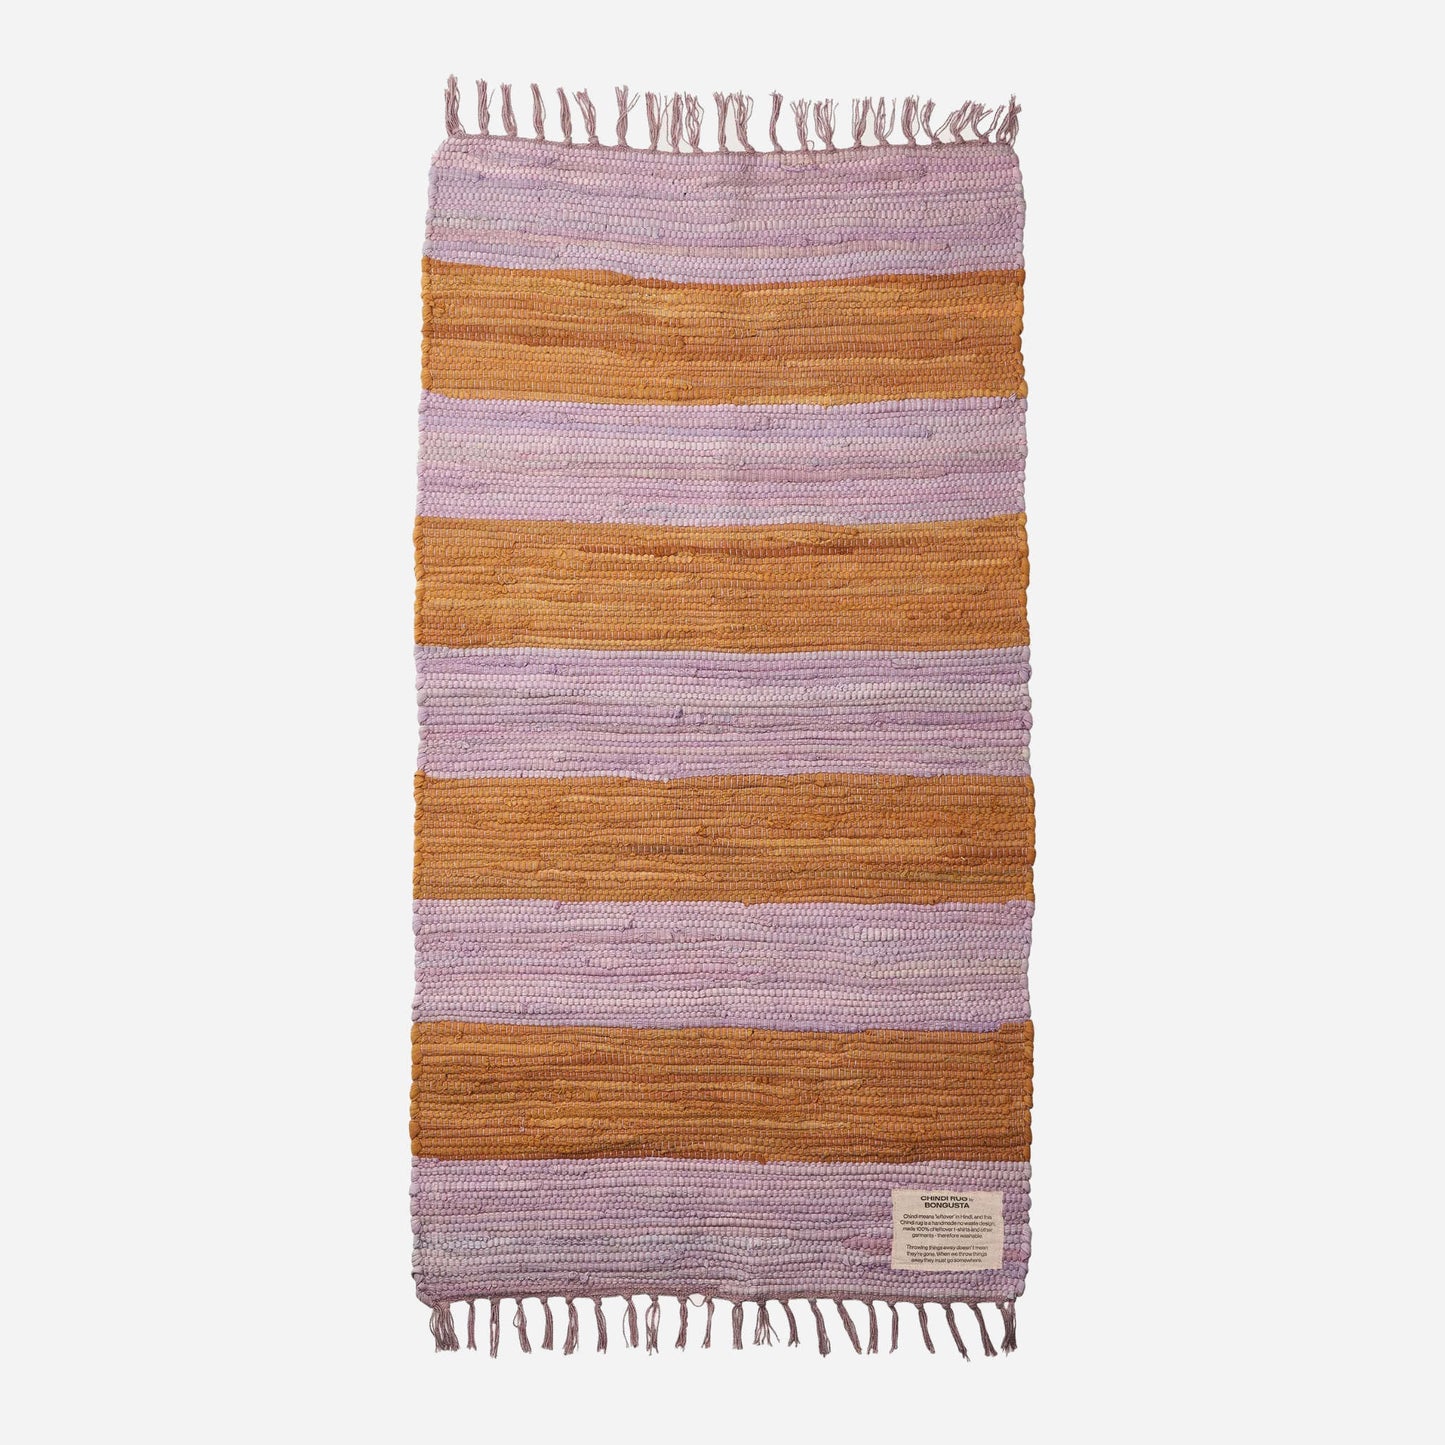  Chindi tæppe fra Bongusta i 60x120 cm i Lilac/Golden, 400 kr.